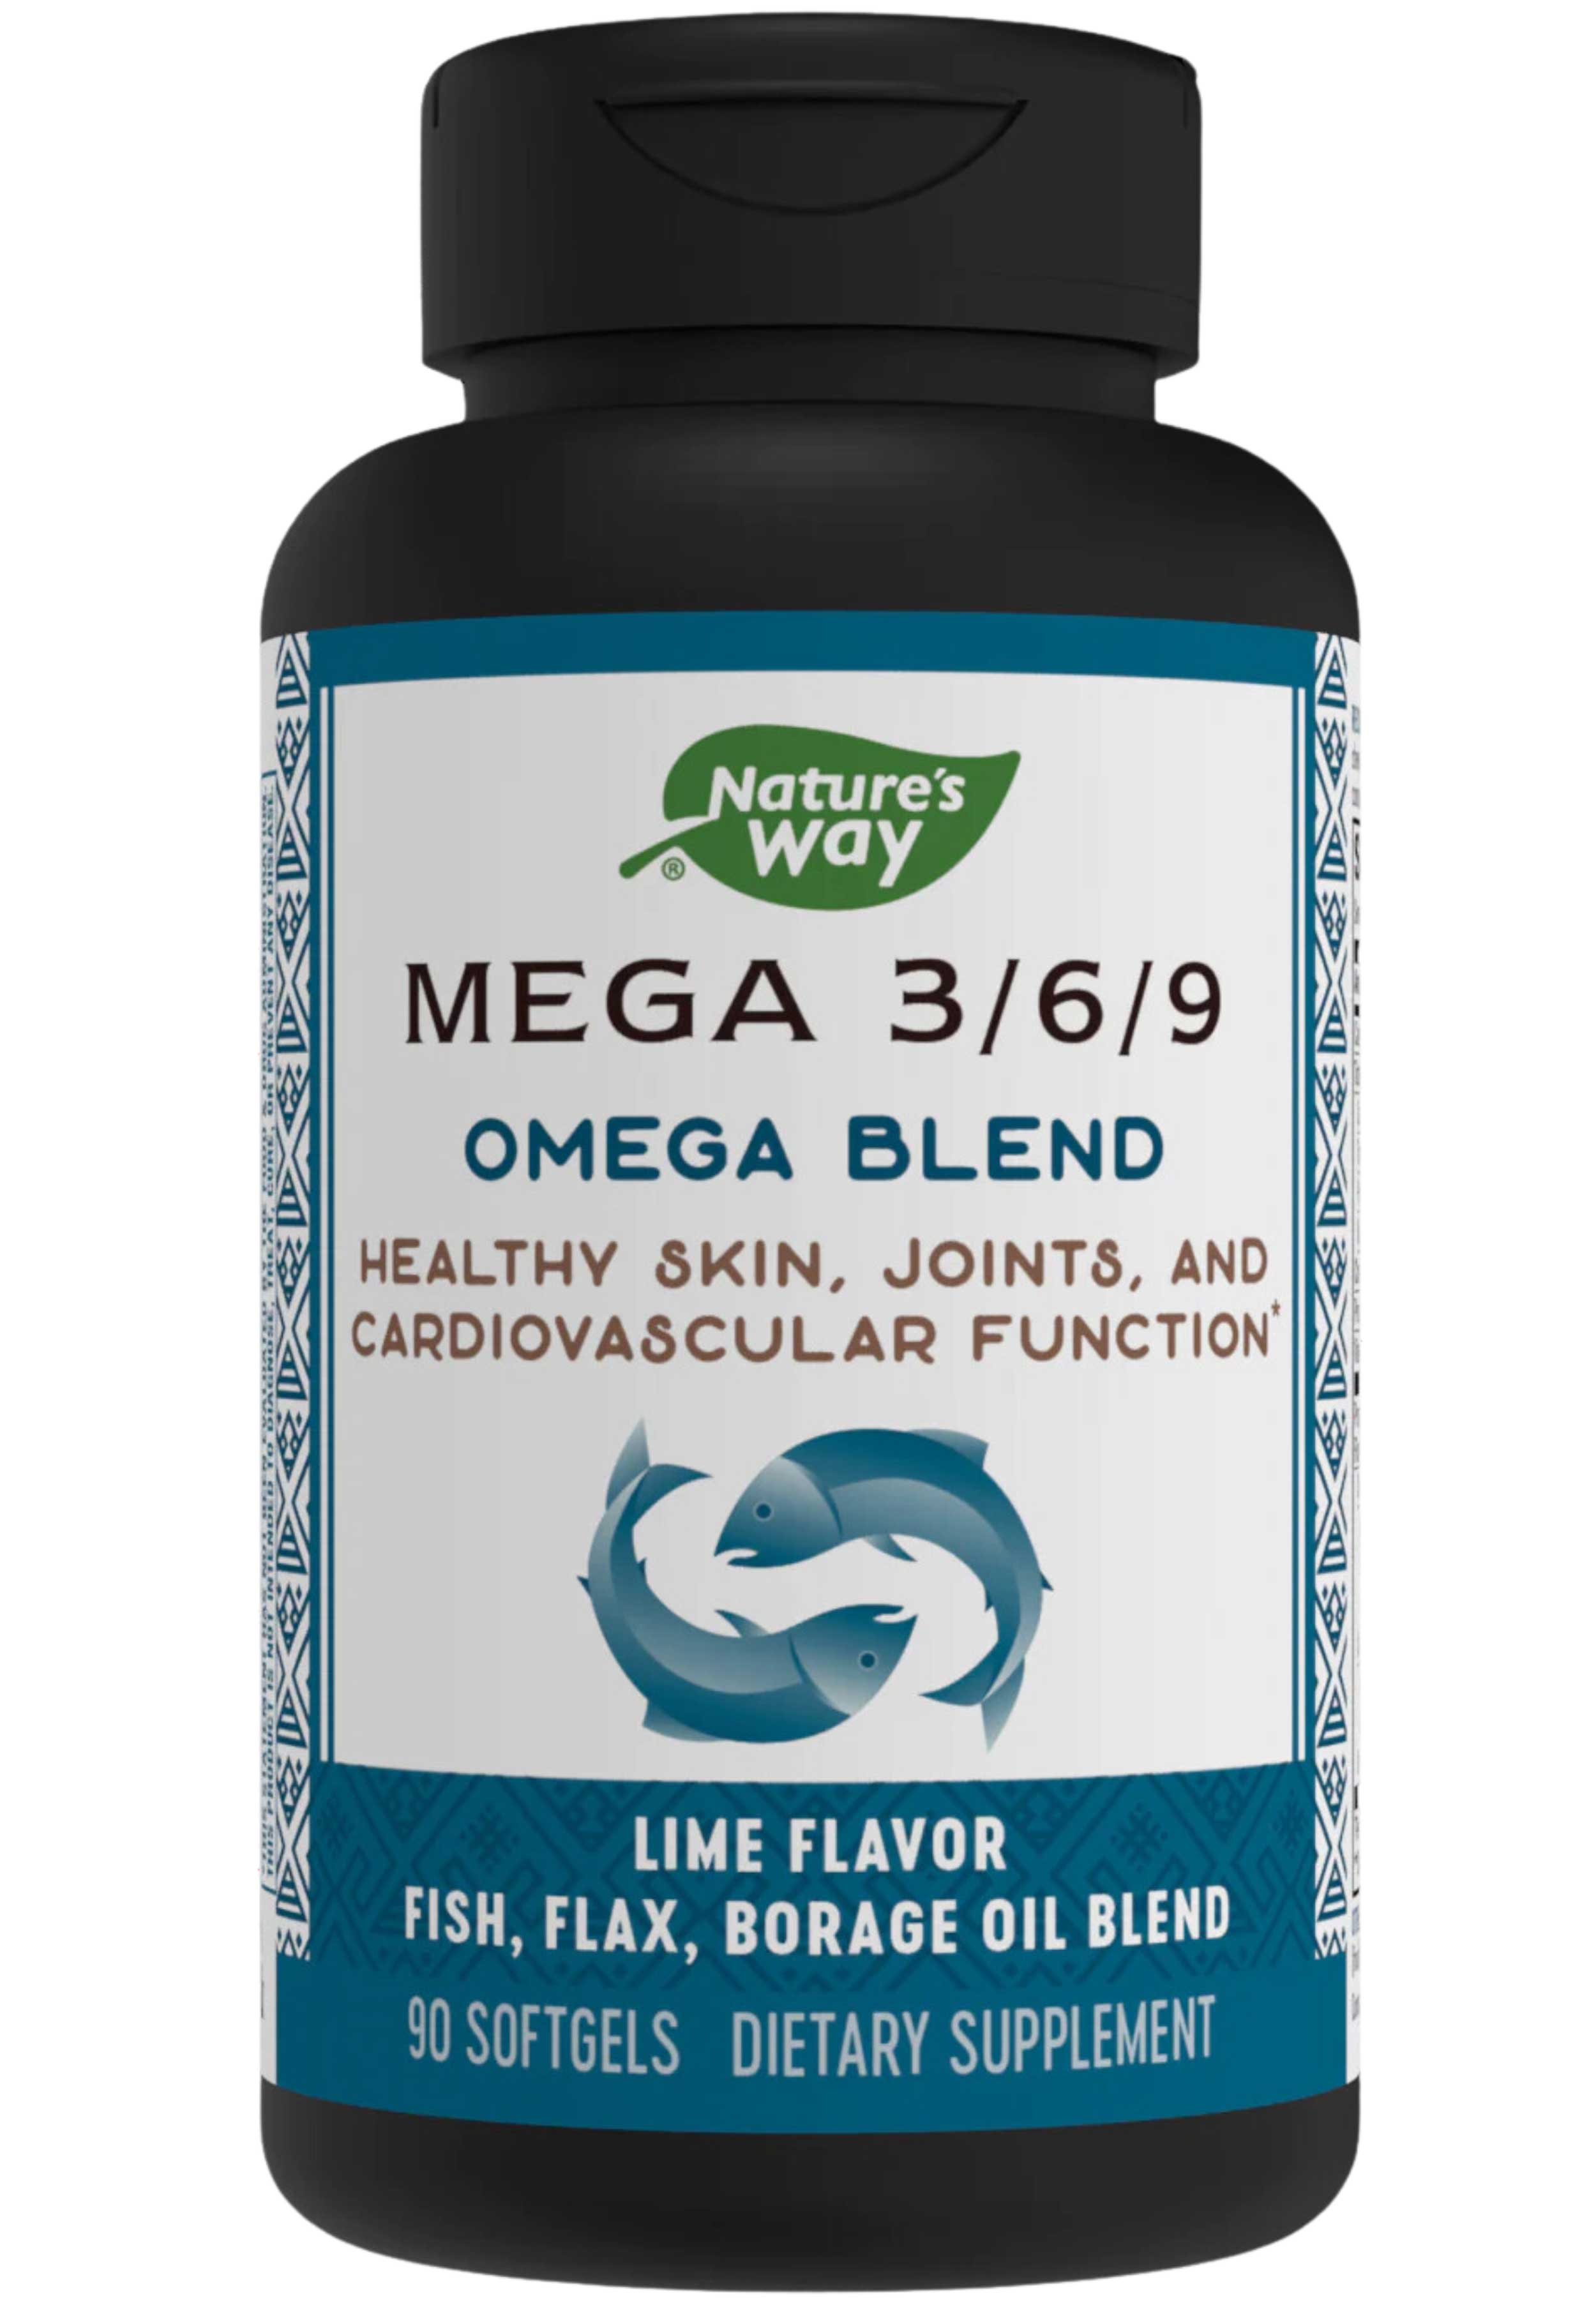 Nature's Way Mega 3/6/9 Omega Blend (Formerly Mega 3/6/9 Blend 1350 mg)